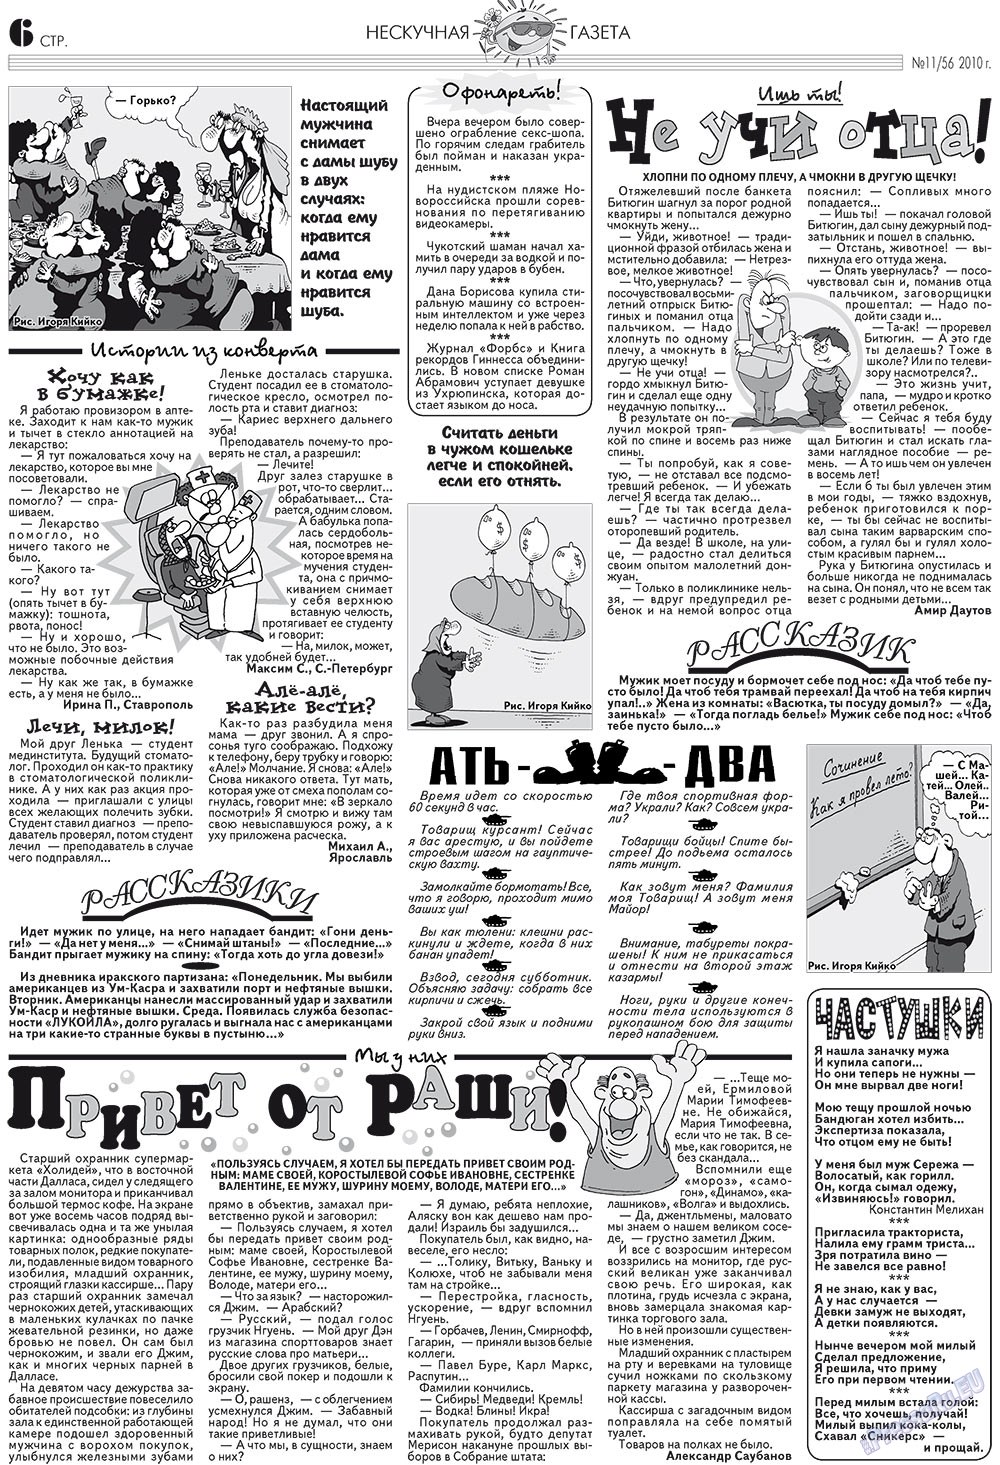 Нескучная газета (журнал). 2010 год, номер 11, стр. 6